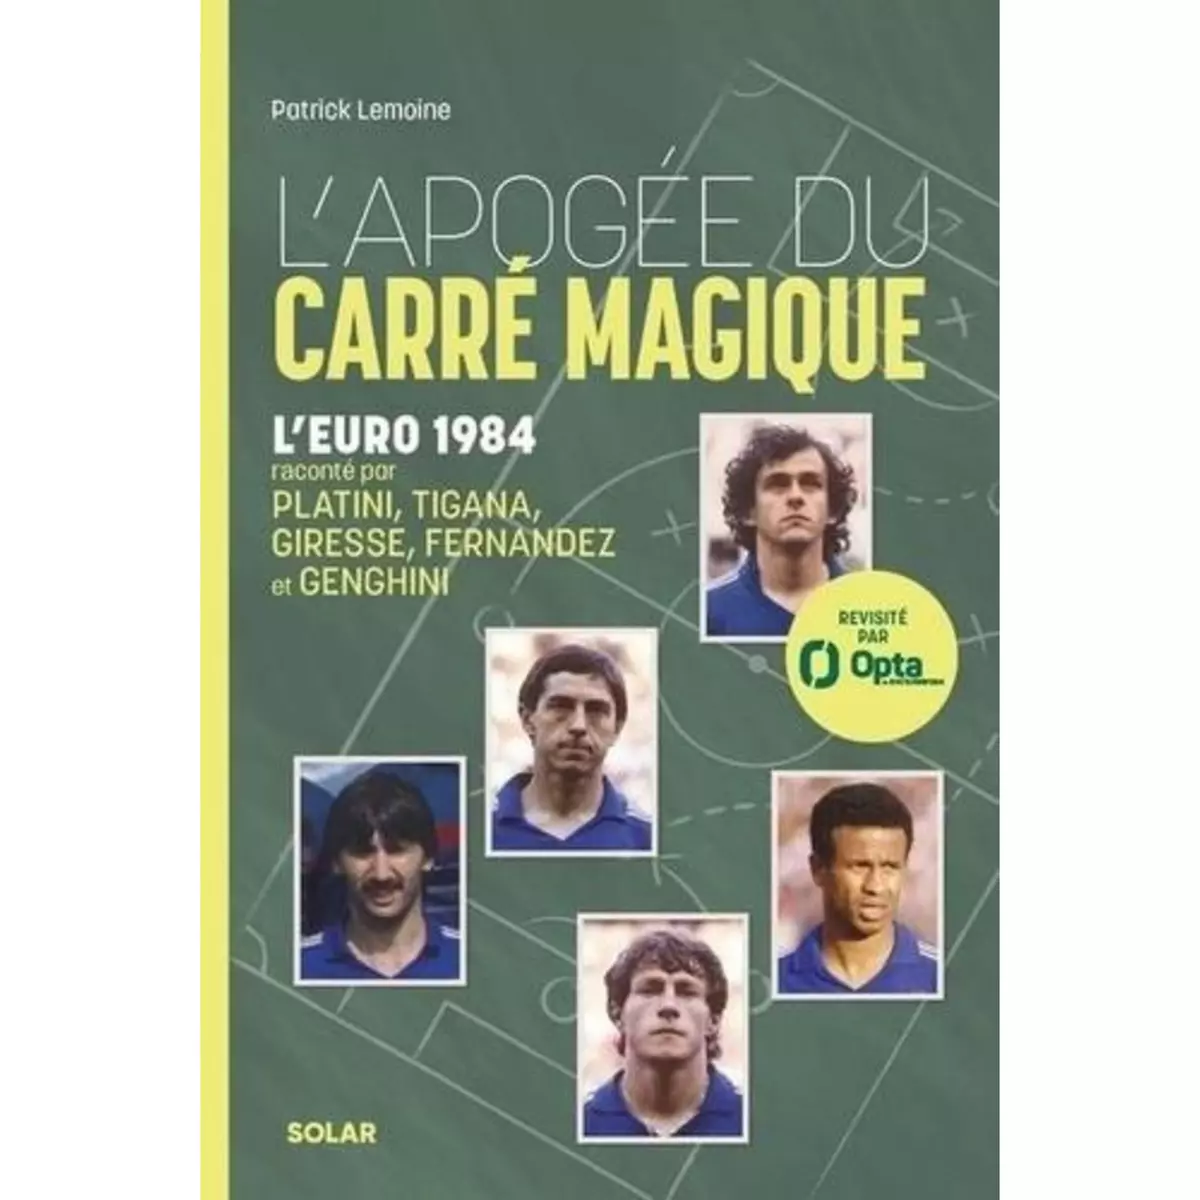  L'APOGEE DU CARRE MAGIQUE. L'EURO 1984, Lemoine Patrick